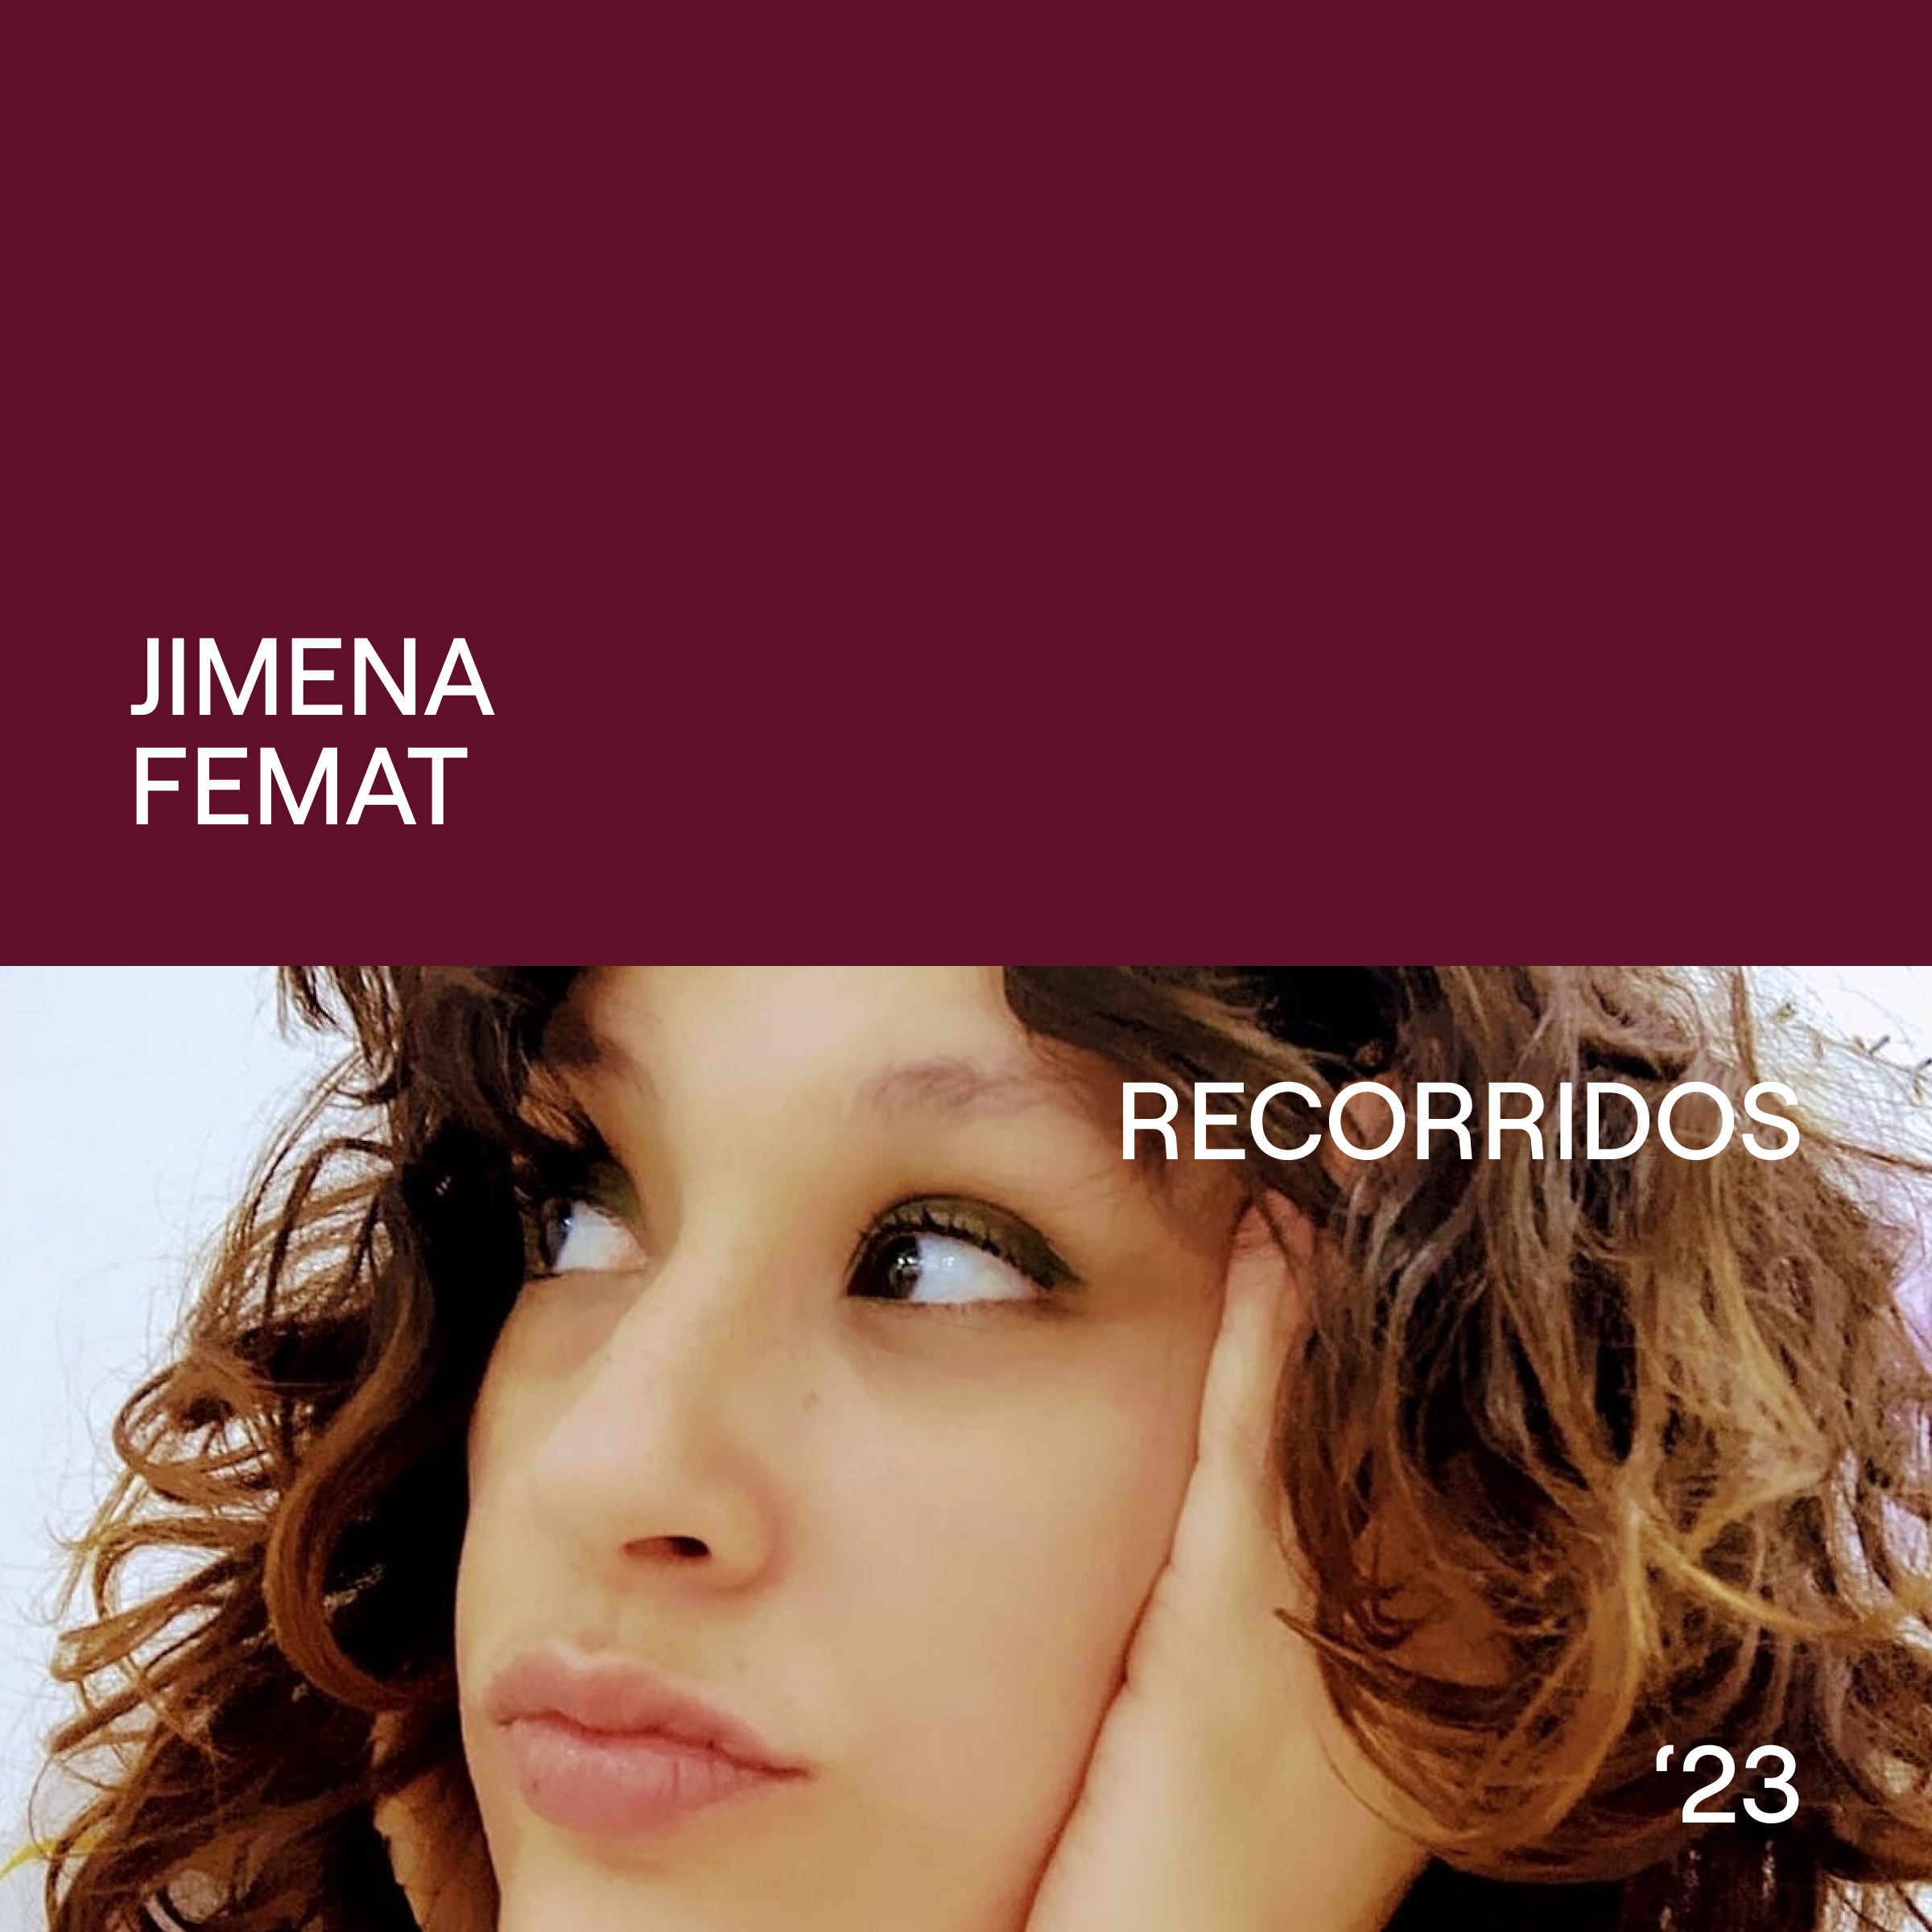 Jimena Femat – Recorridos arquitectas.mx 23’